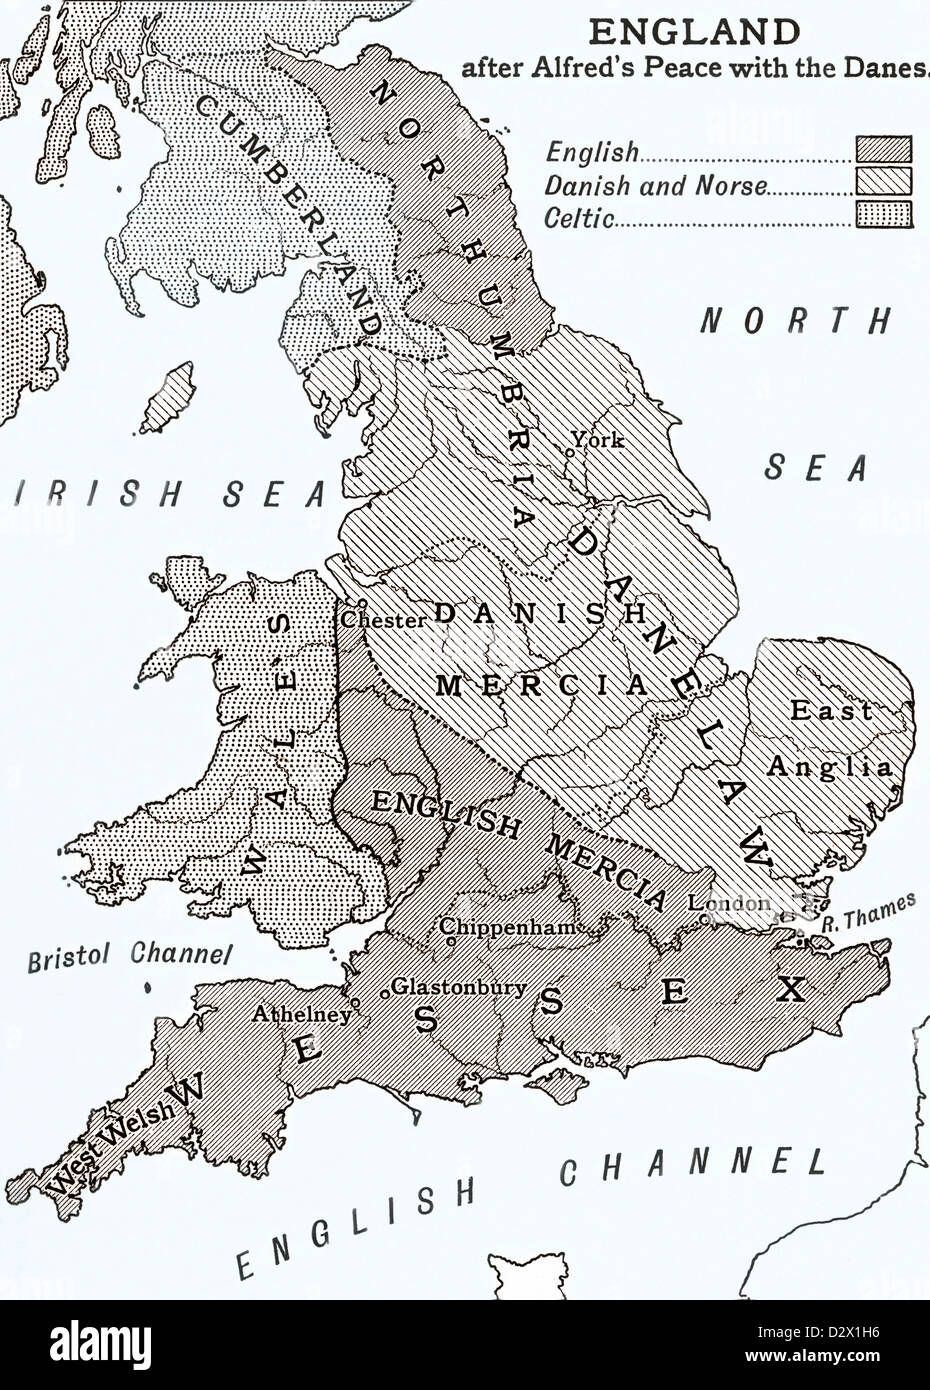 Una mappa di Inghilterra dopo King Alfred per la pace con i danesi nel IX secolo Foto Stock